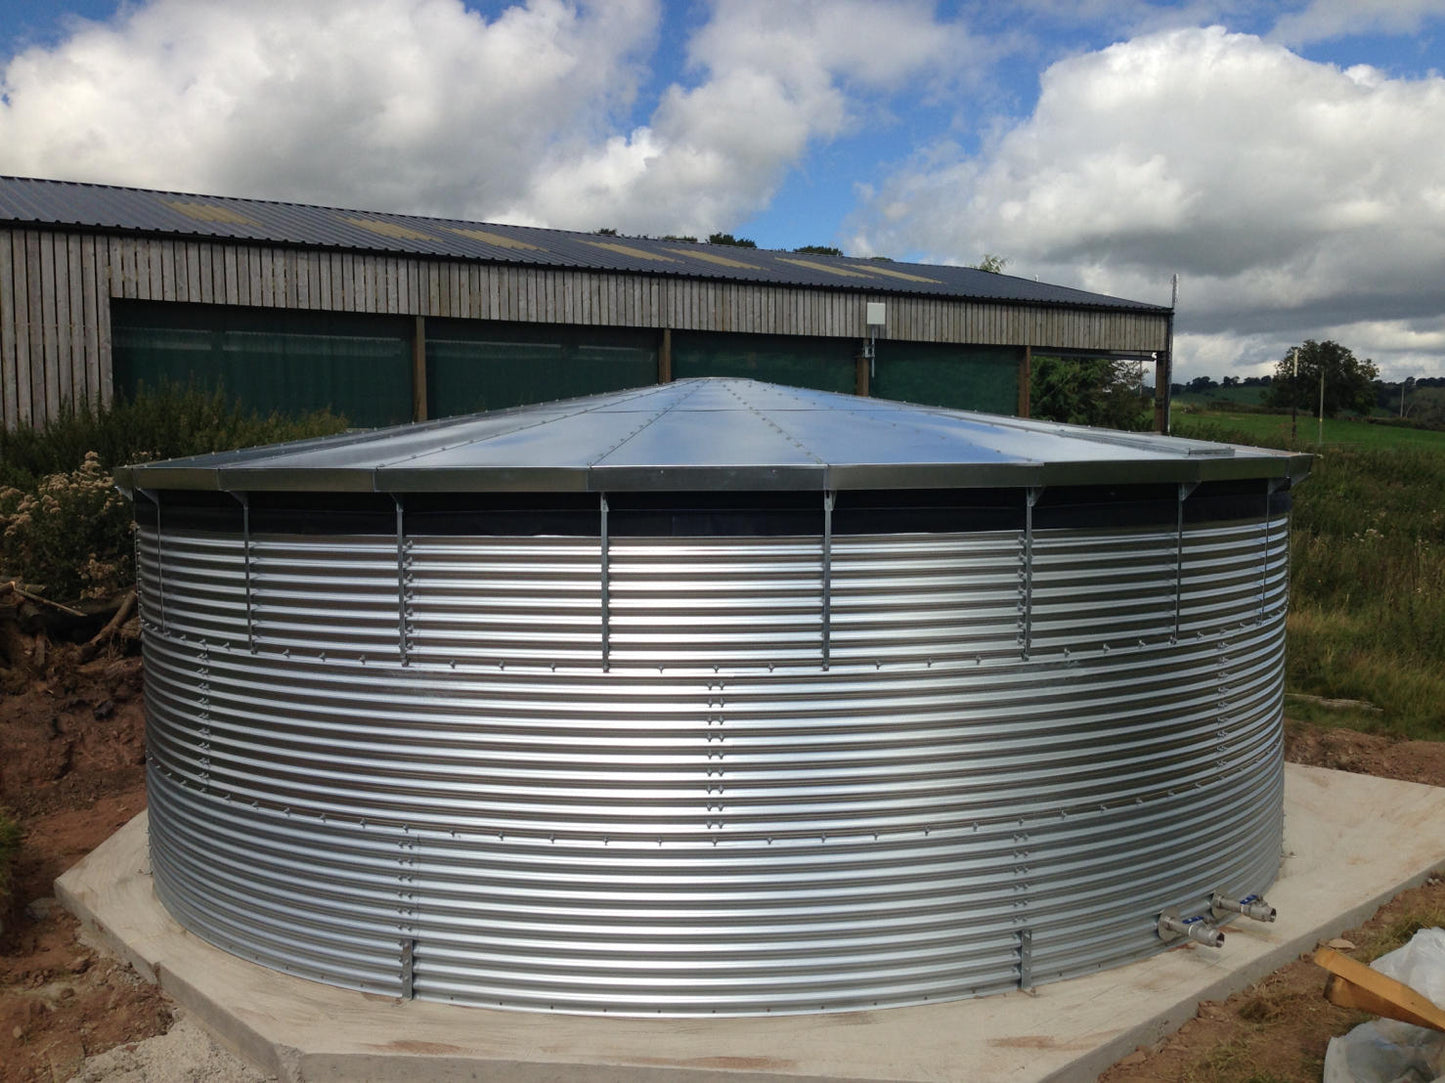 96,000 litre Galvanised Steel Water Tank